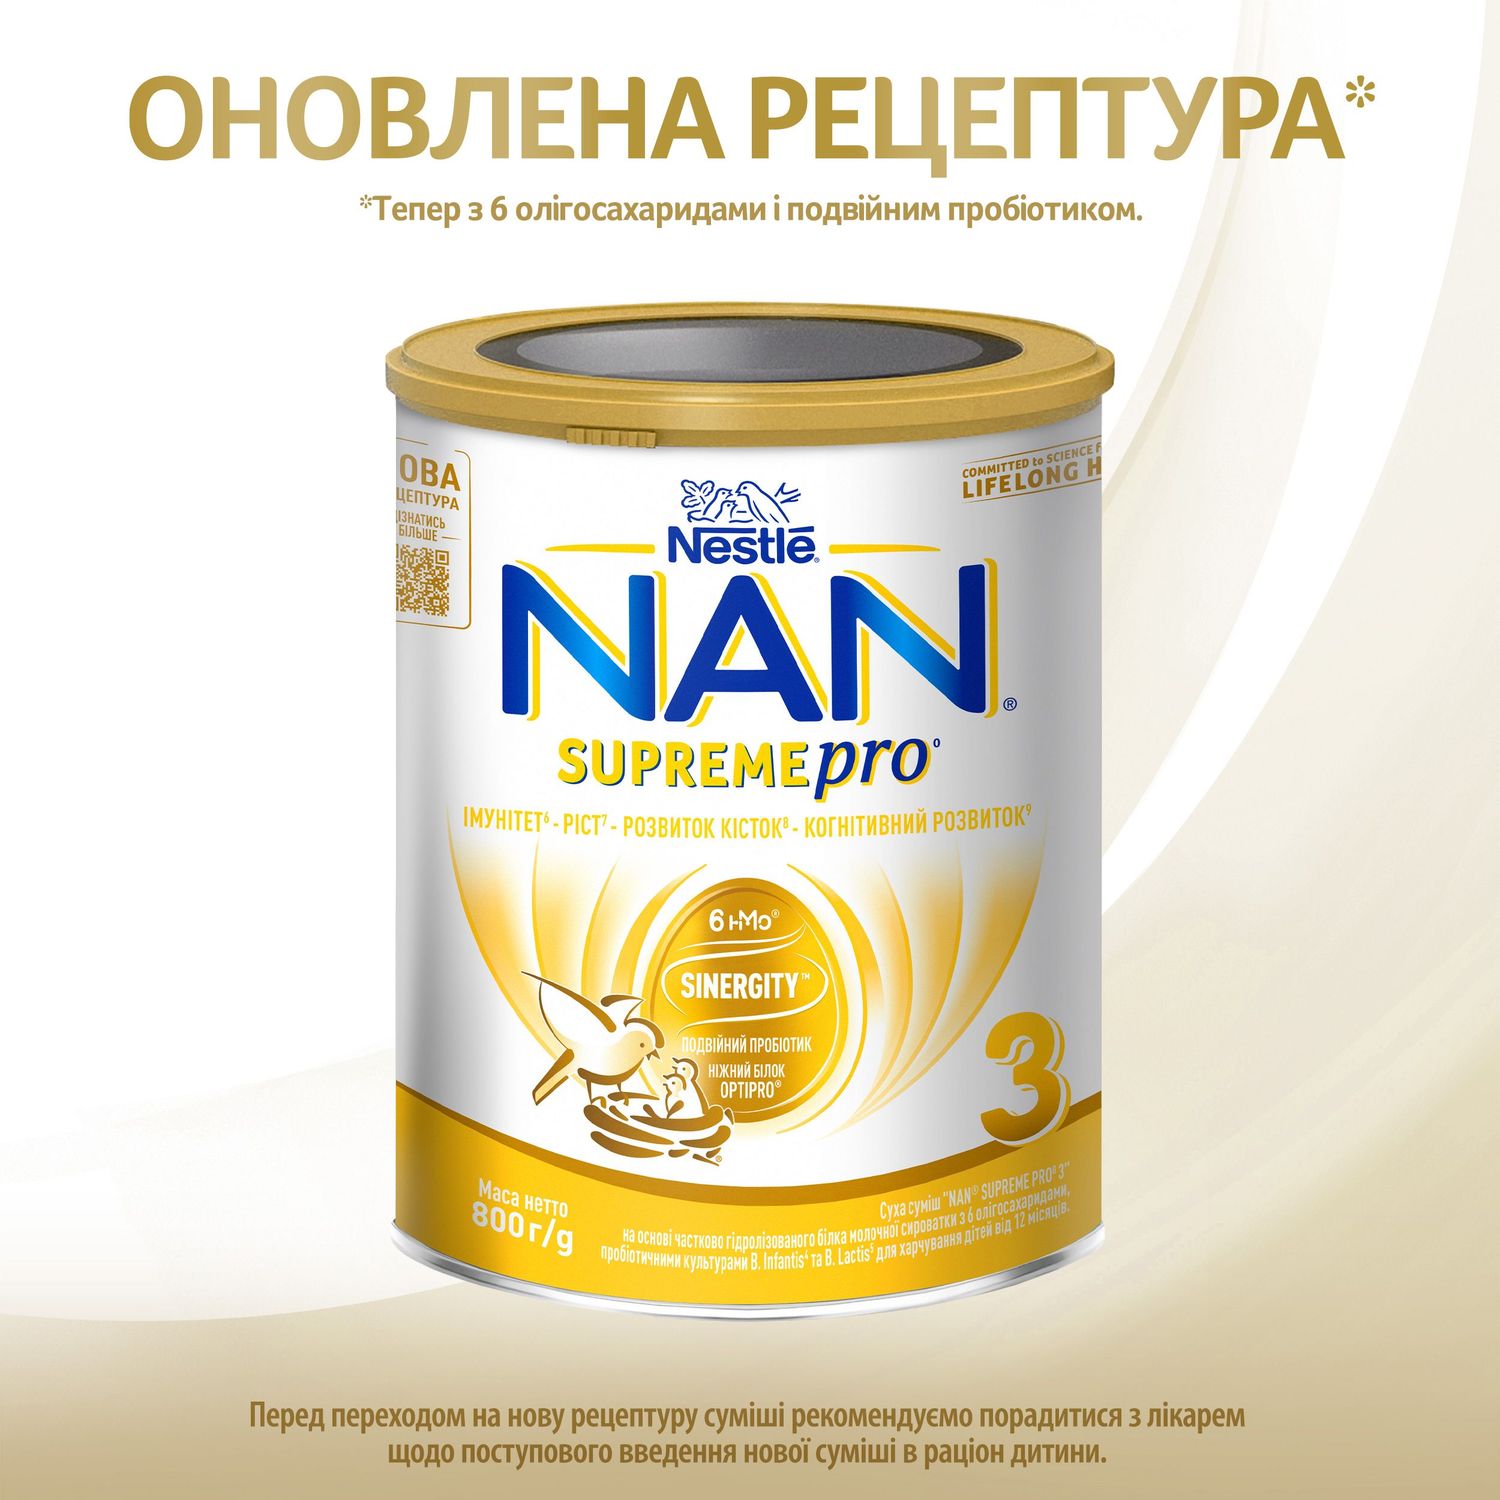 Сухая смесь NAN 3 Supreme Pro с 6 олигосахаридами и двойным пробиотиком для питания детей от 12 месяцев 800 г - фото 4